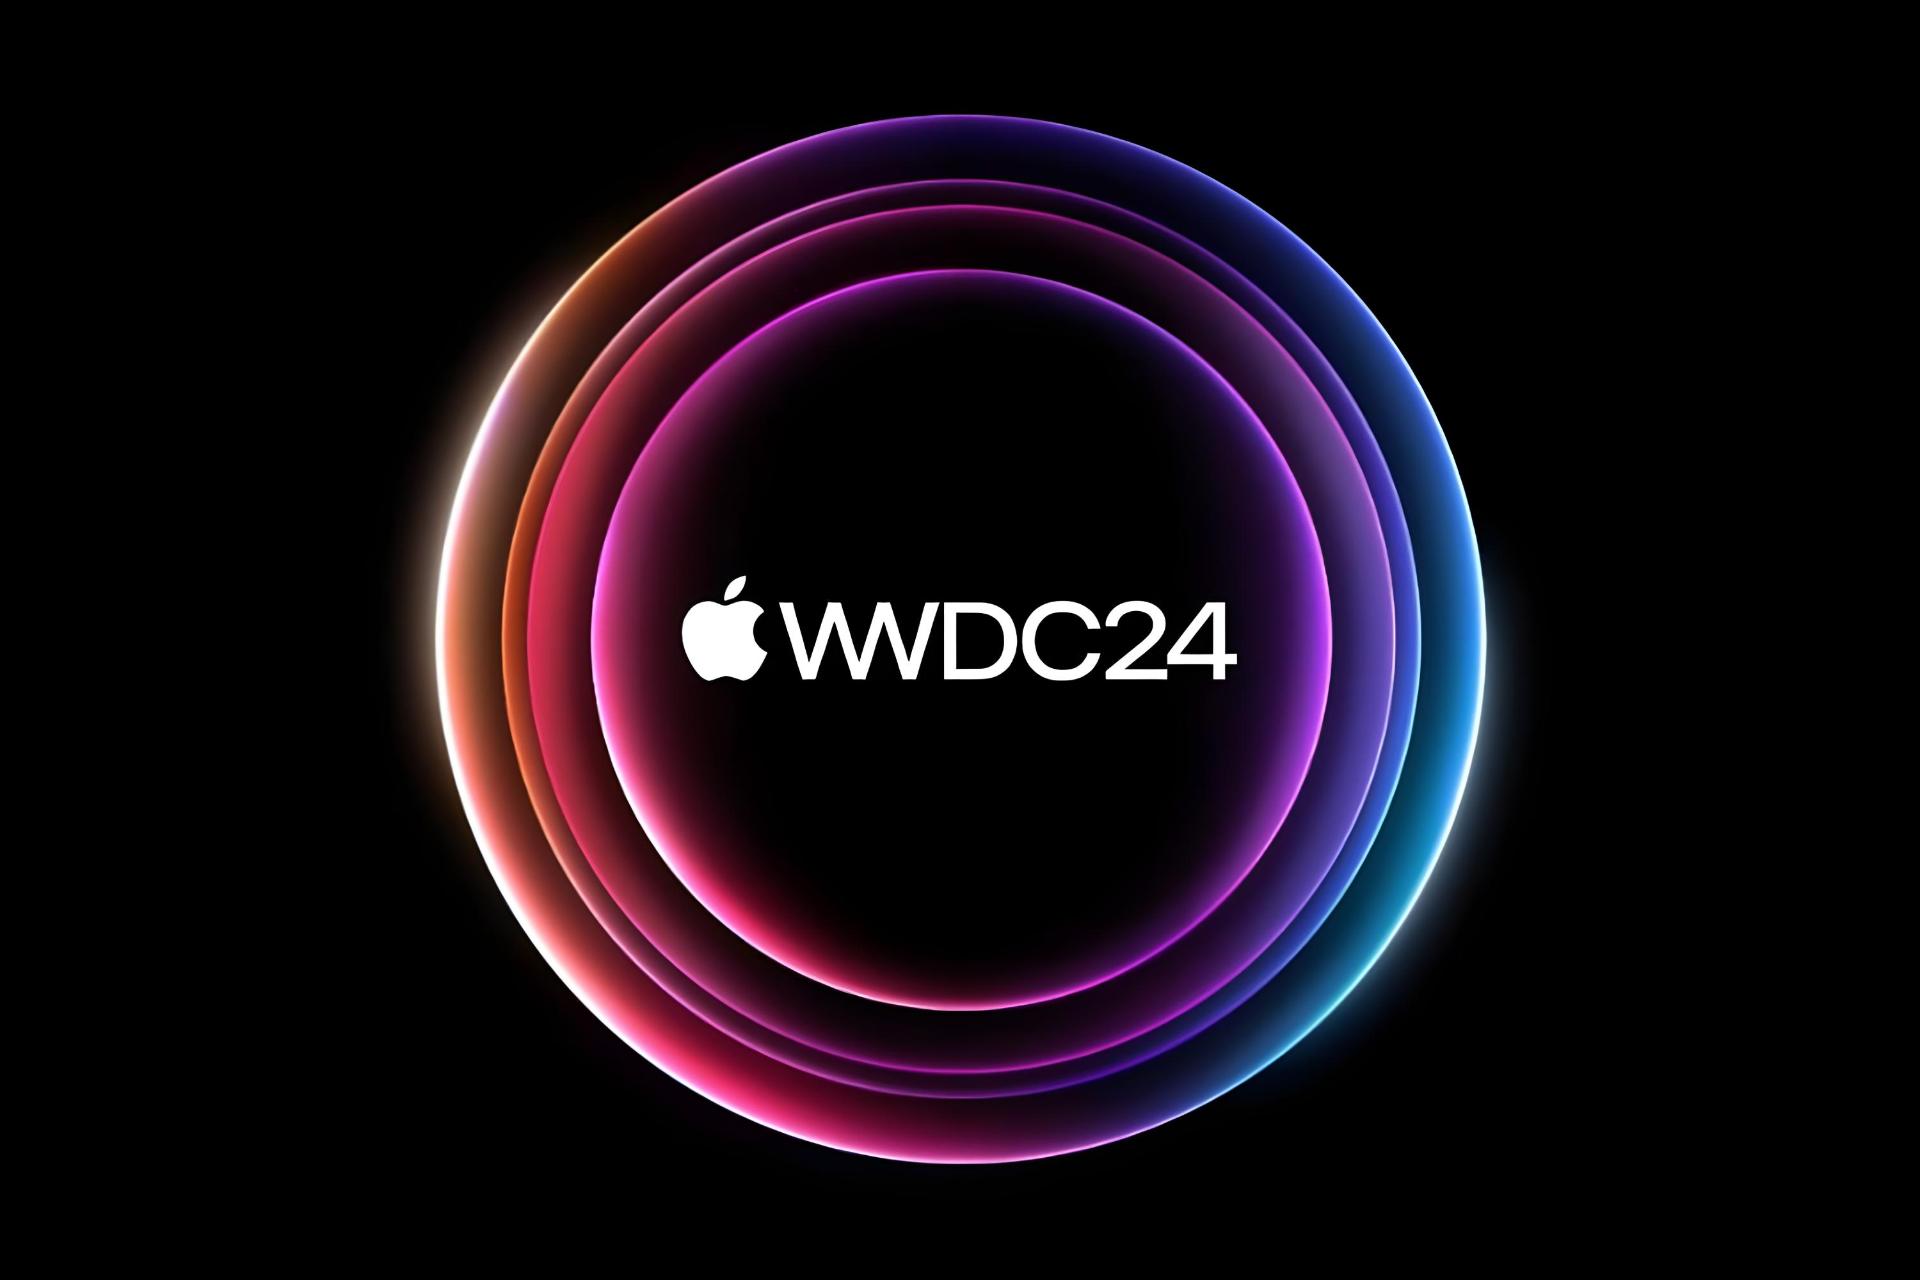 مرجع متخصصين ايران پوستر رويداد WWDC 2024 اپل